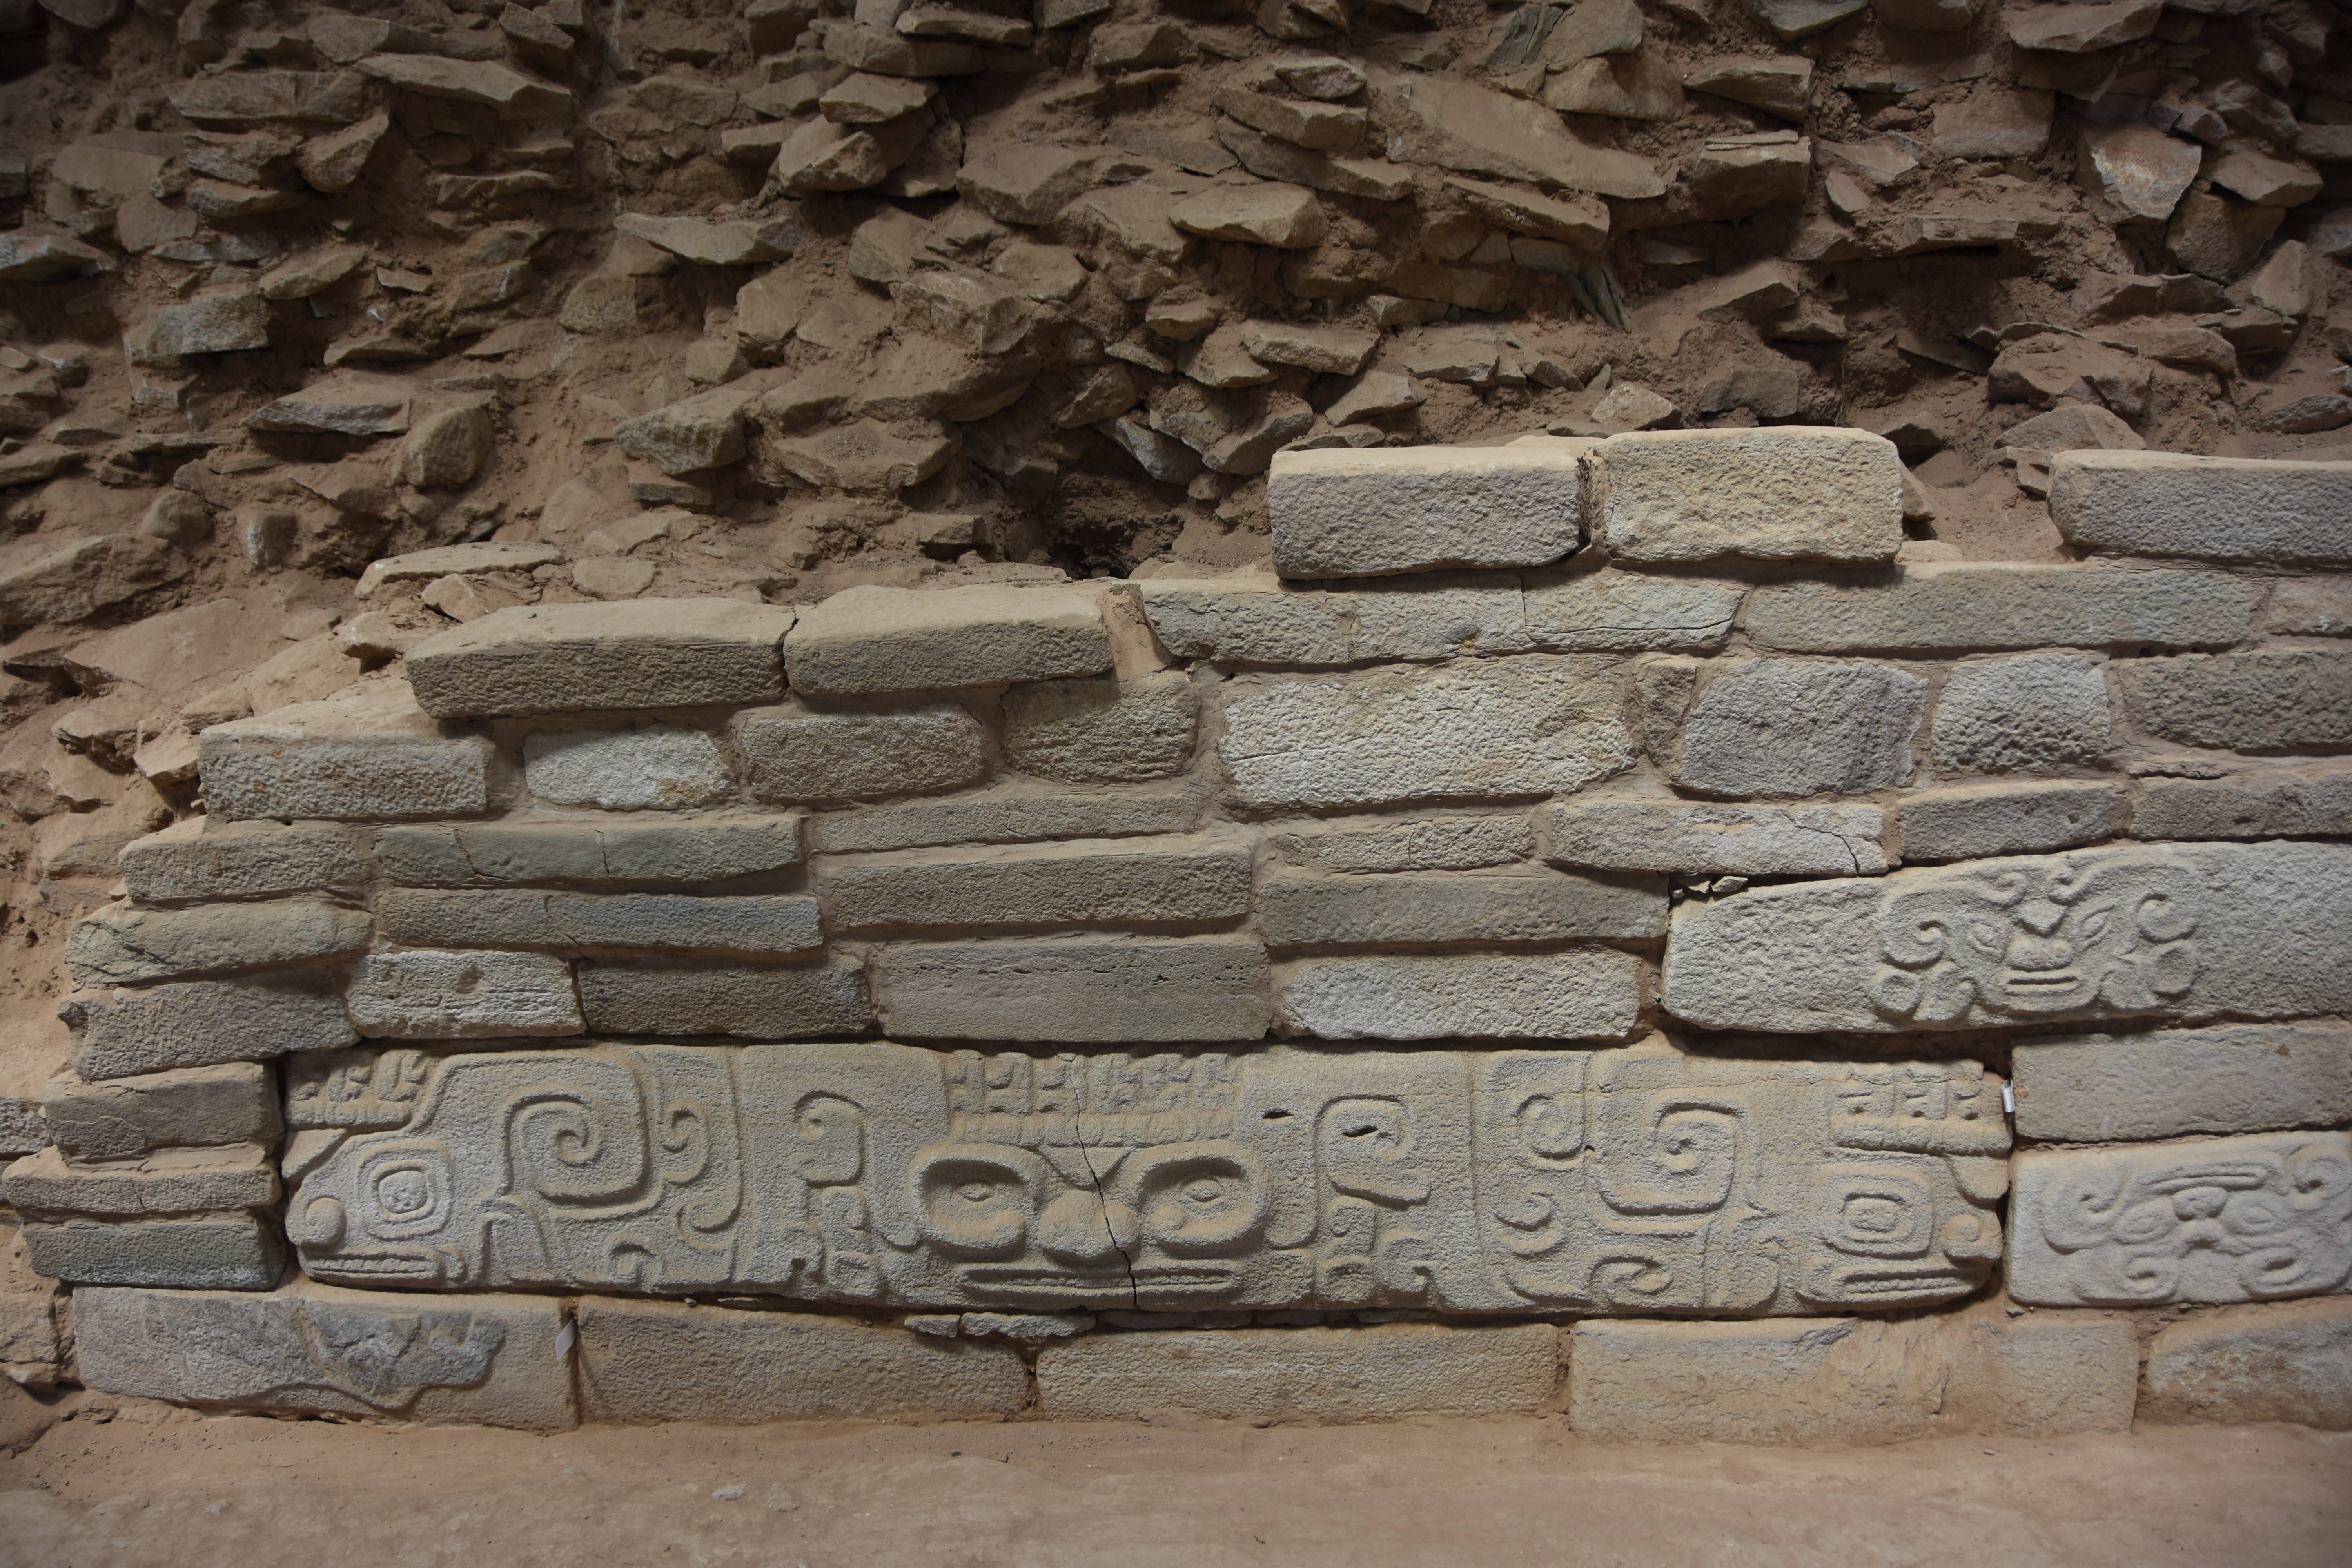 邵晶在石峁遗址的神面纹石立柱发掘现场.受访者供图